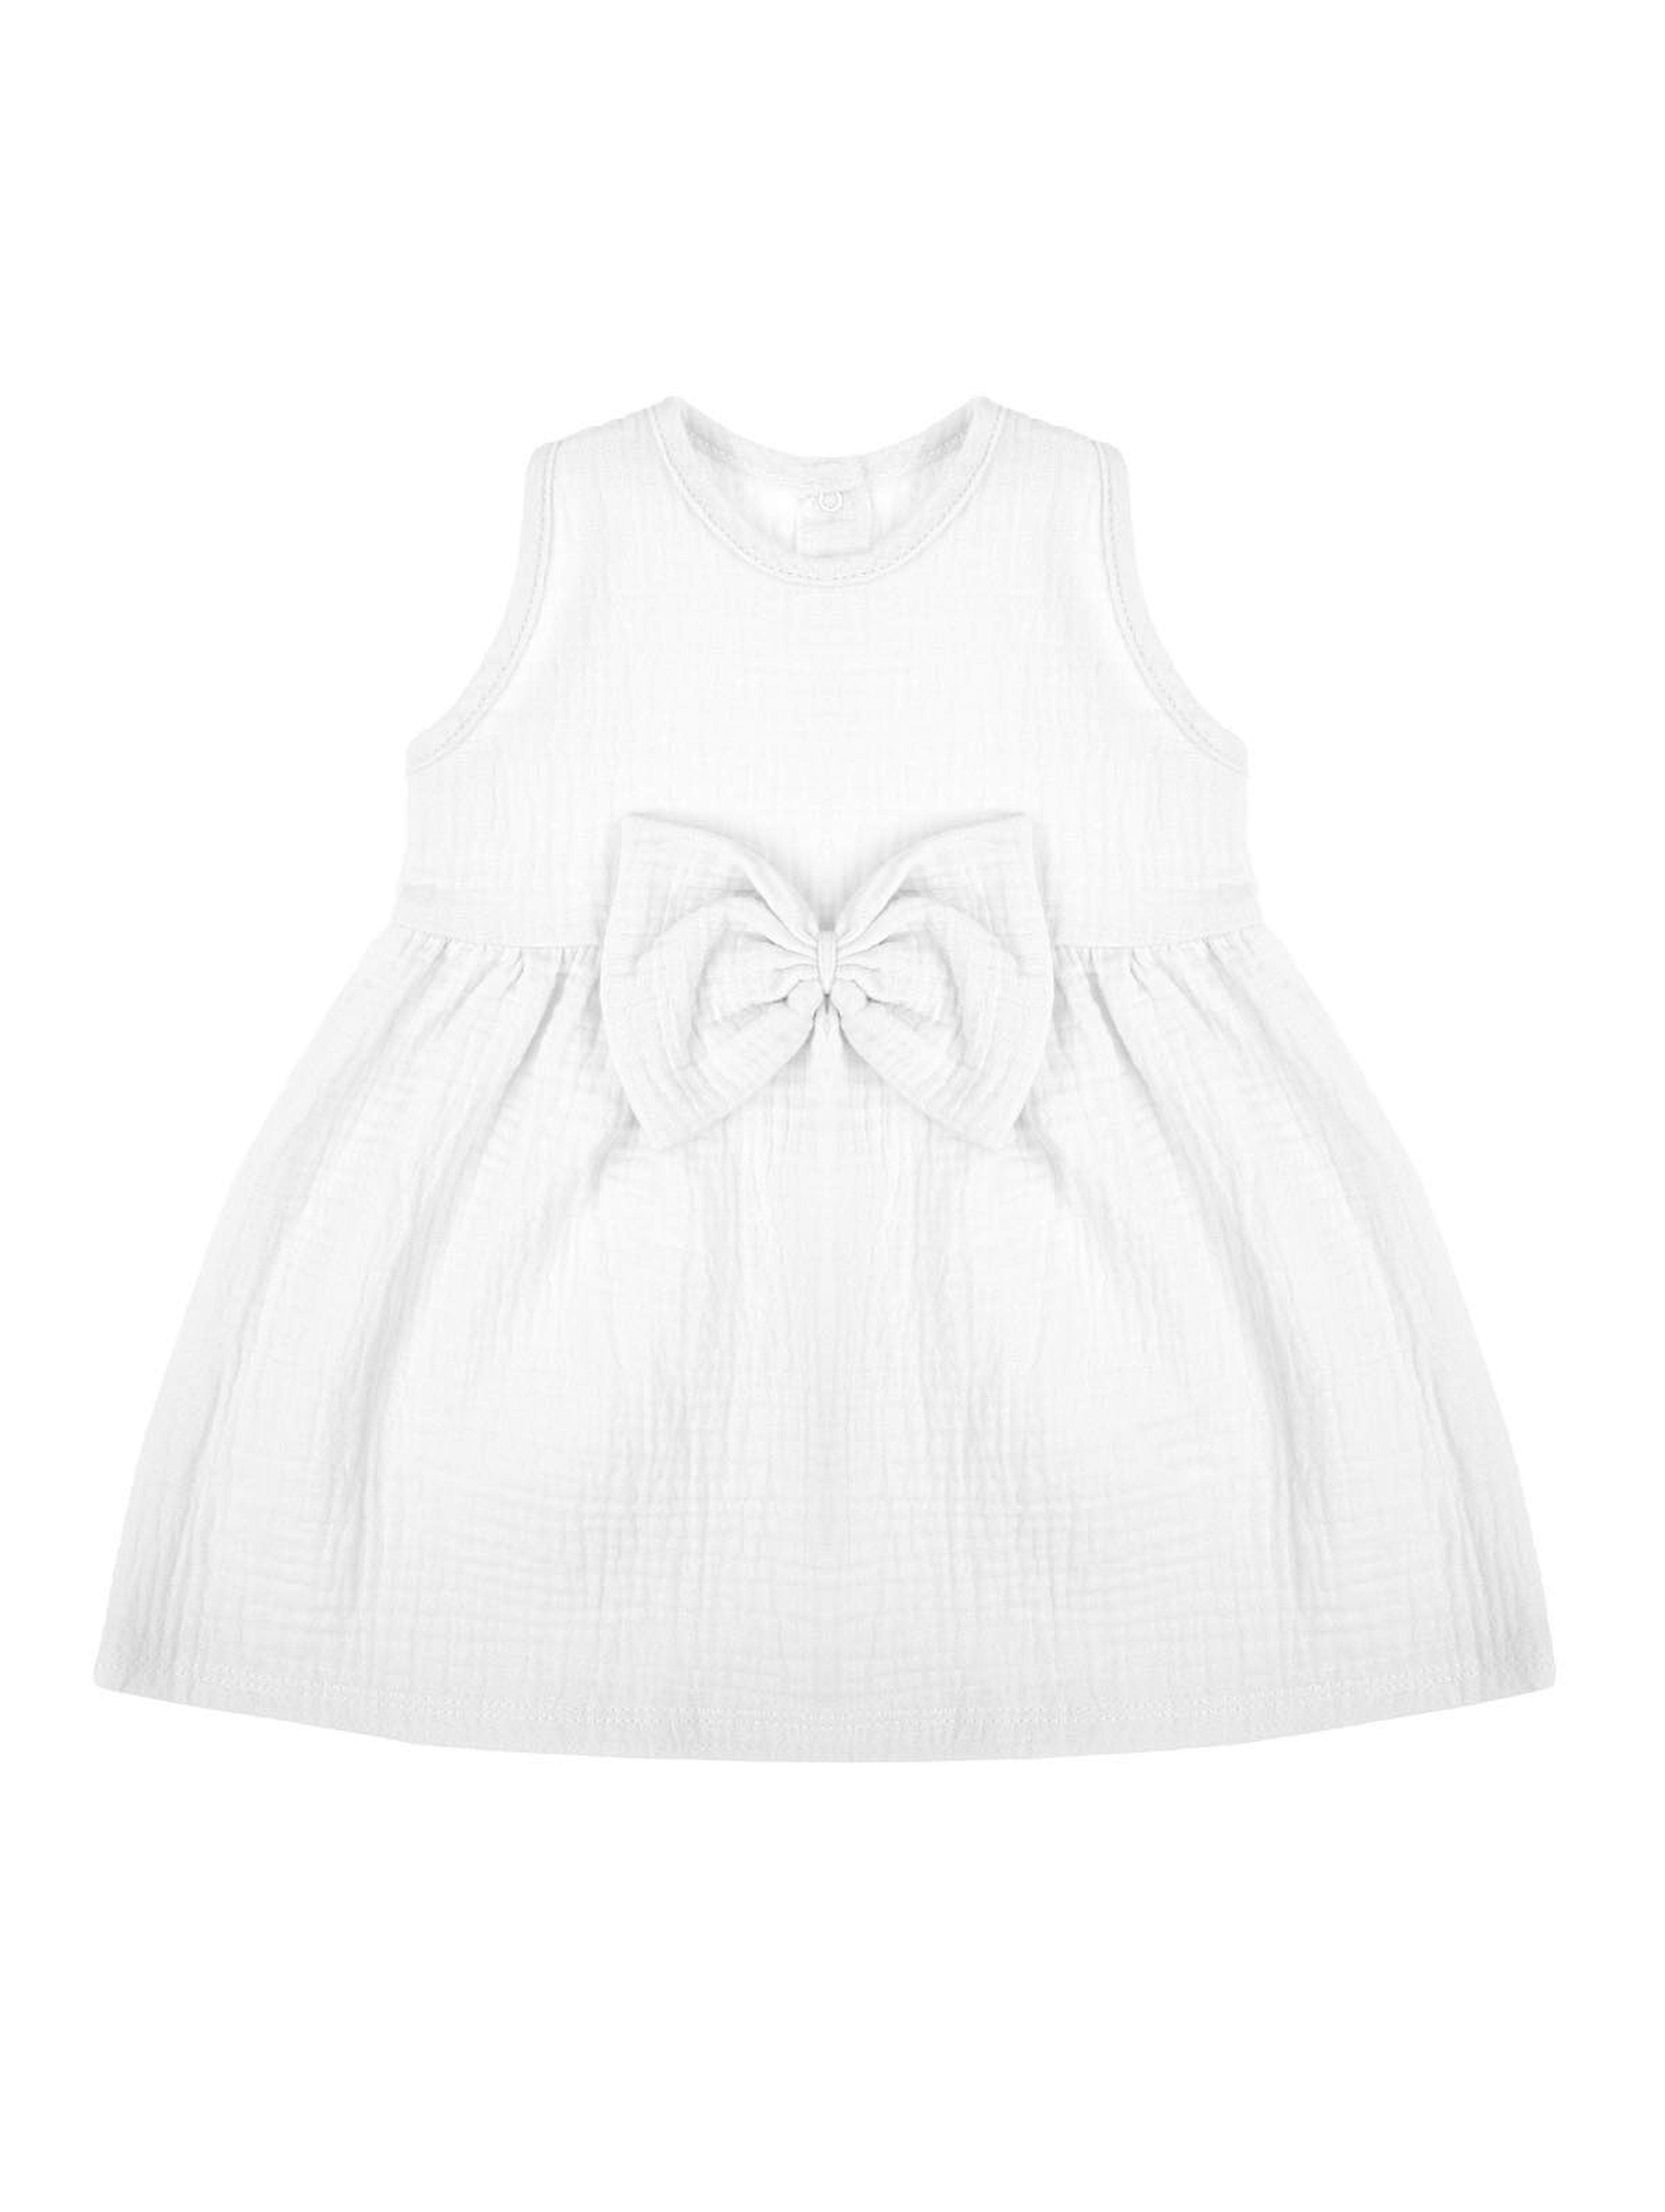 Muślinowa sukienka na ramiączkach dla dziewczynki w kolorze białym